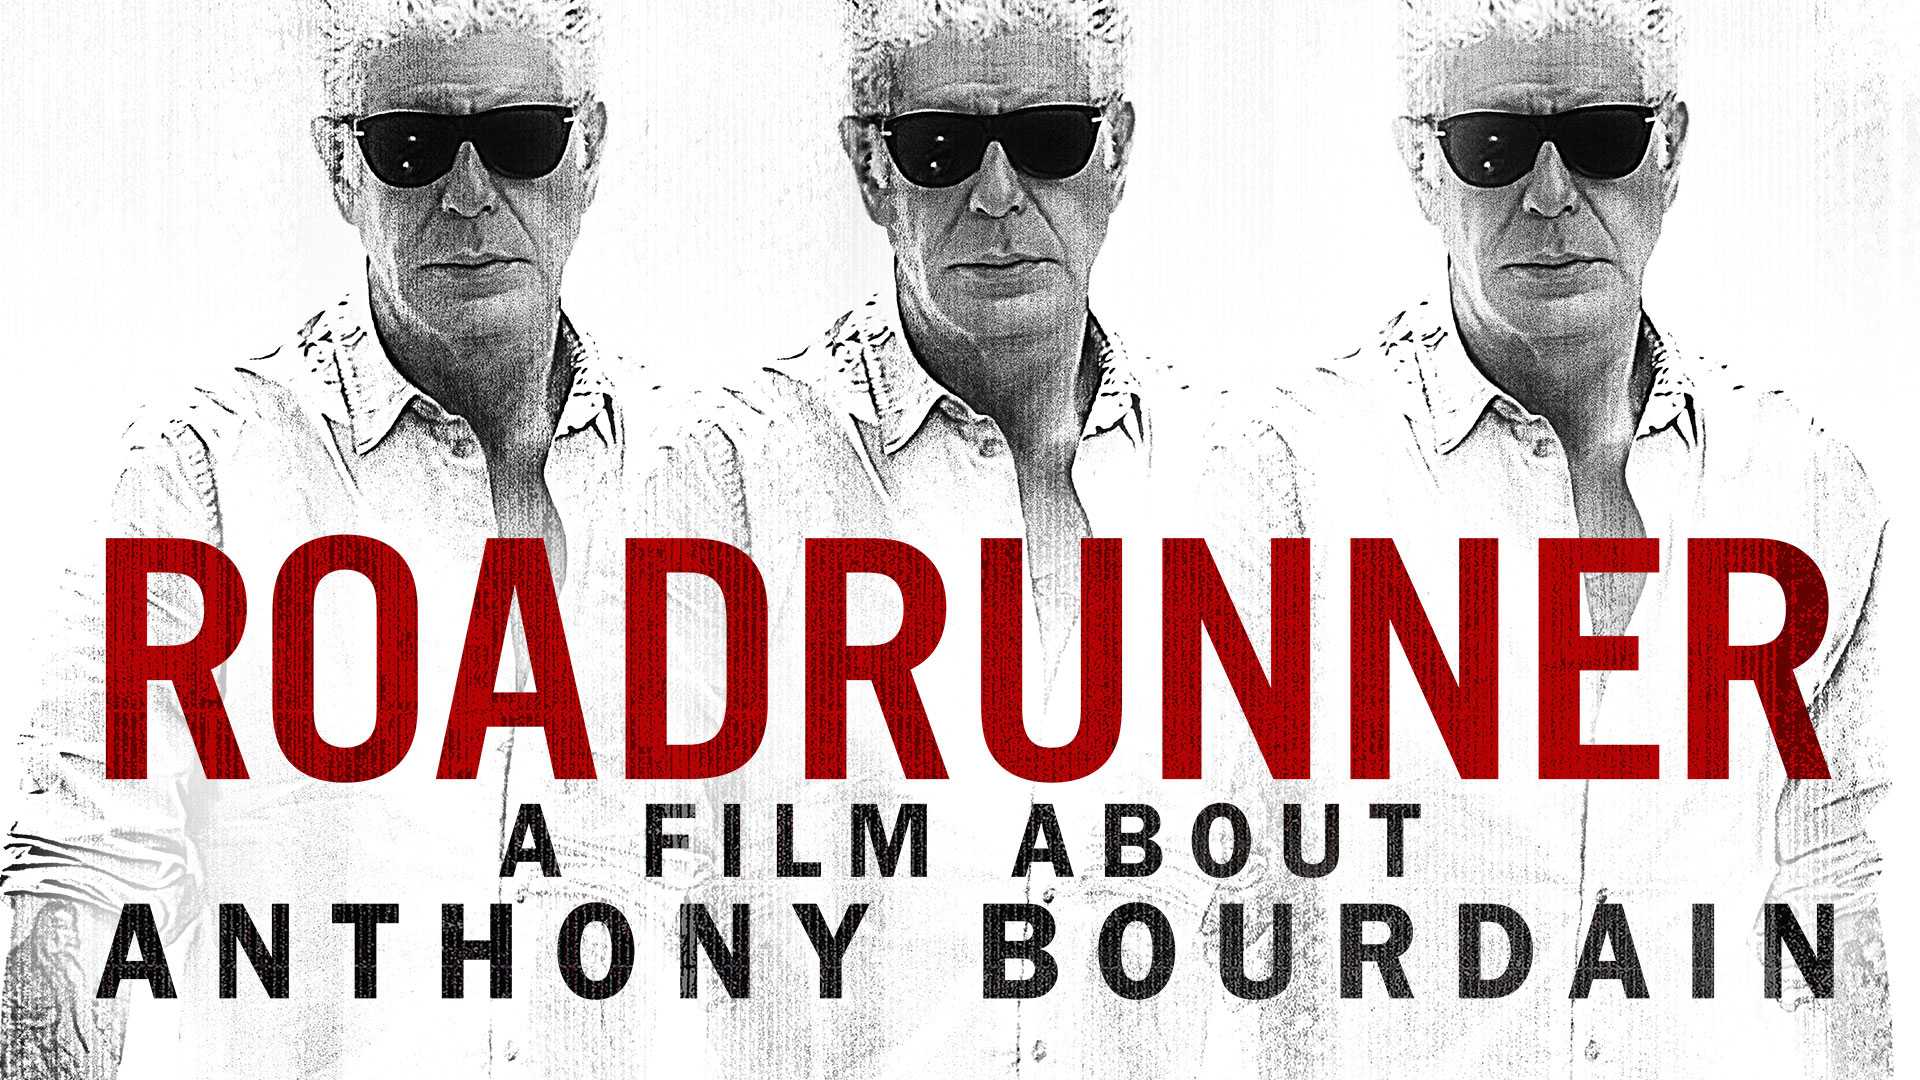 Roadrunner: Một bộ phim về Anthony Bourdain - Roadrunner: A Film About Anthony Bourdain